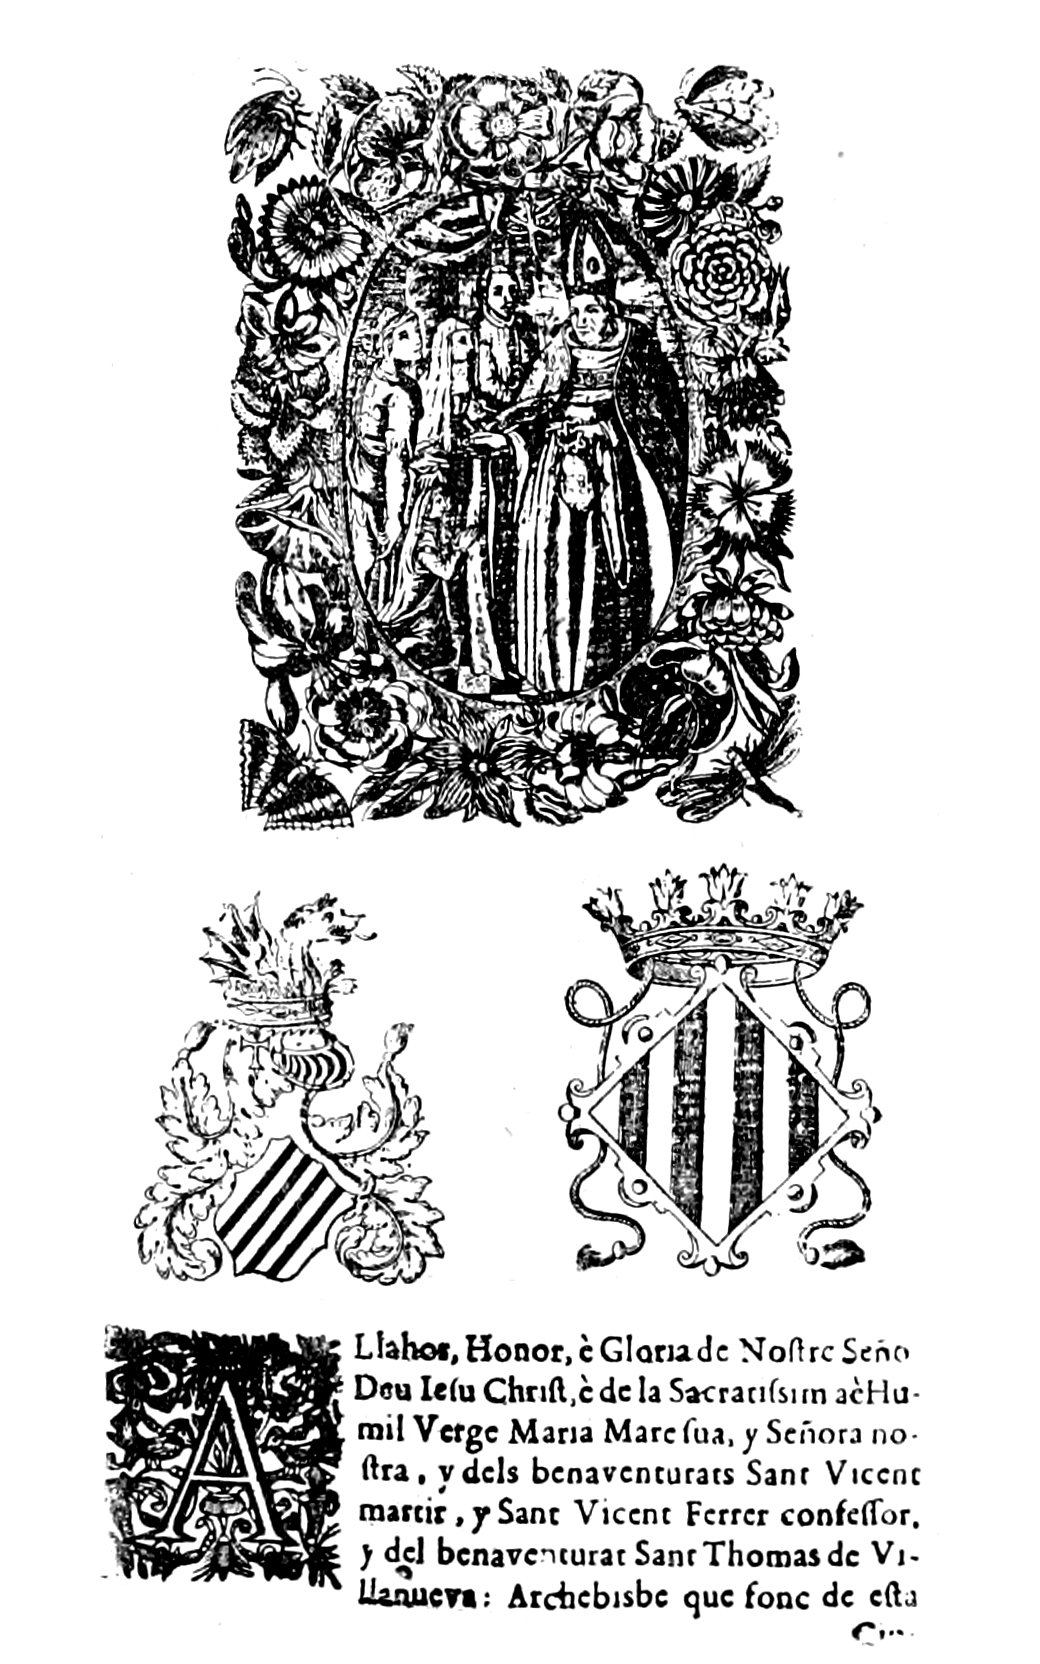 File A Llahor Honor E Gloria De Nostre Senor Deu Iesu Christ Y Del Benaventurat Sant Thomas De Villanueva 18 Abril 1659 Png Wikimedia Commons